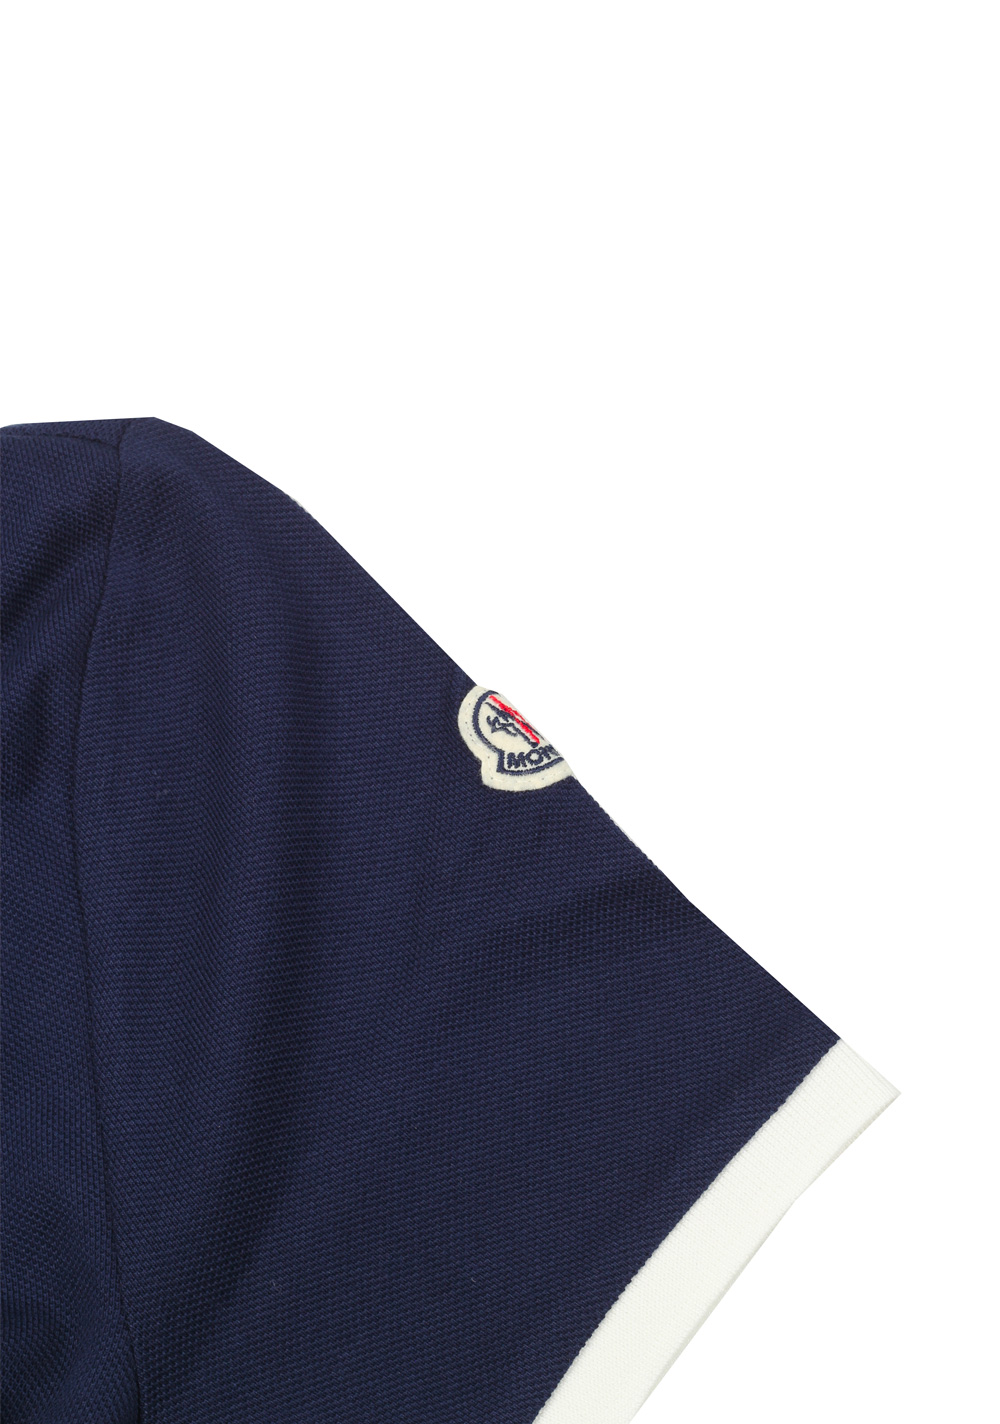 Moncler Navy Polo Shirt Size M / 38R U.S. | Costume Limité